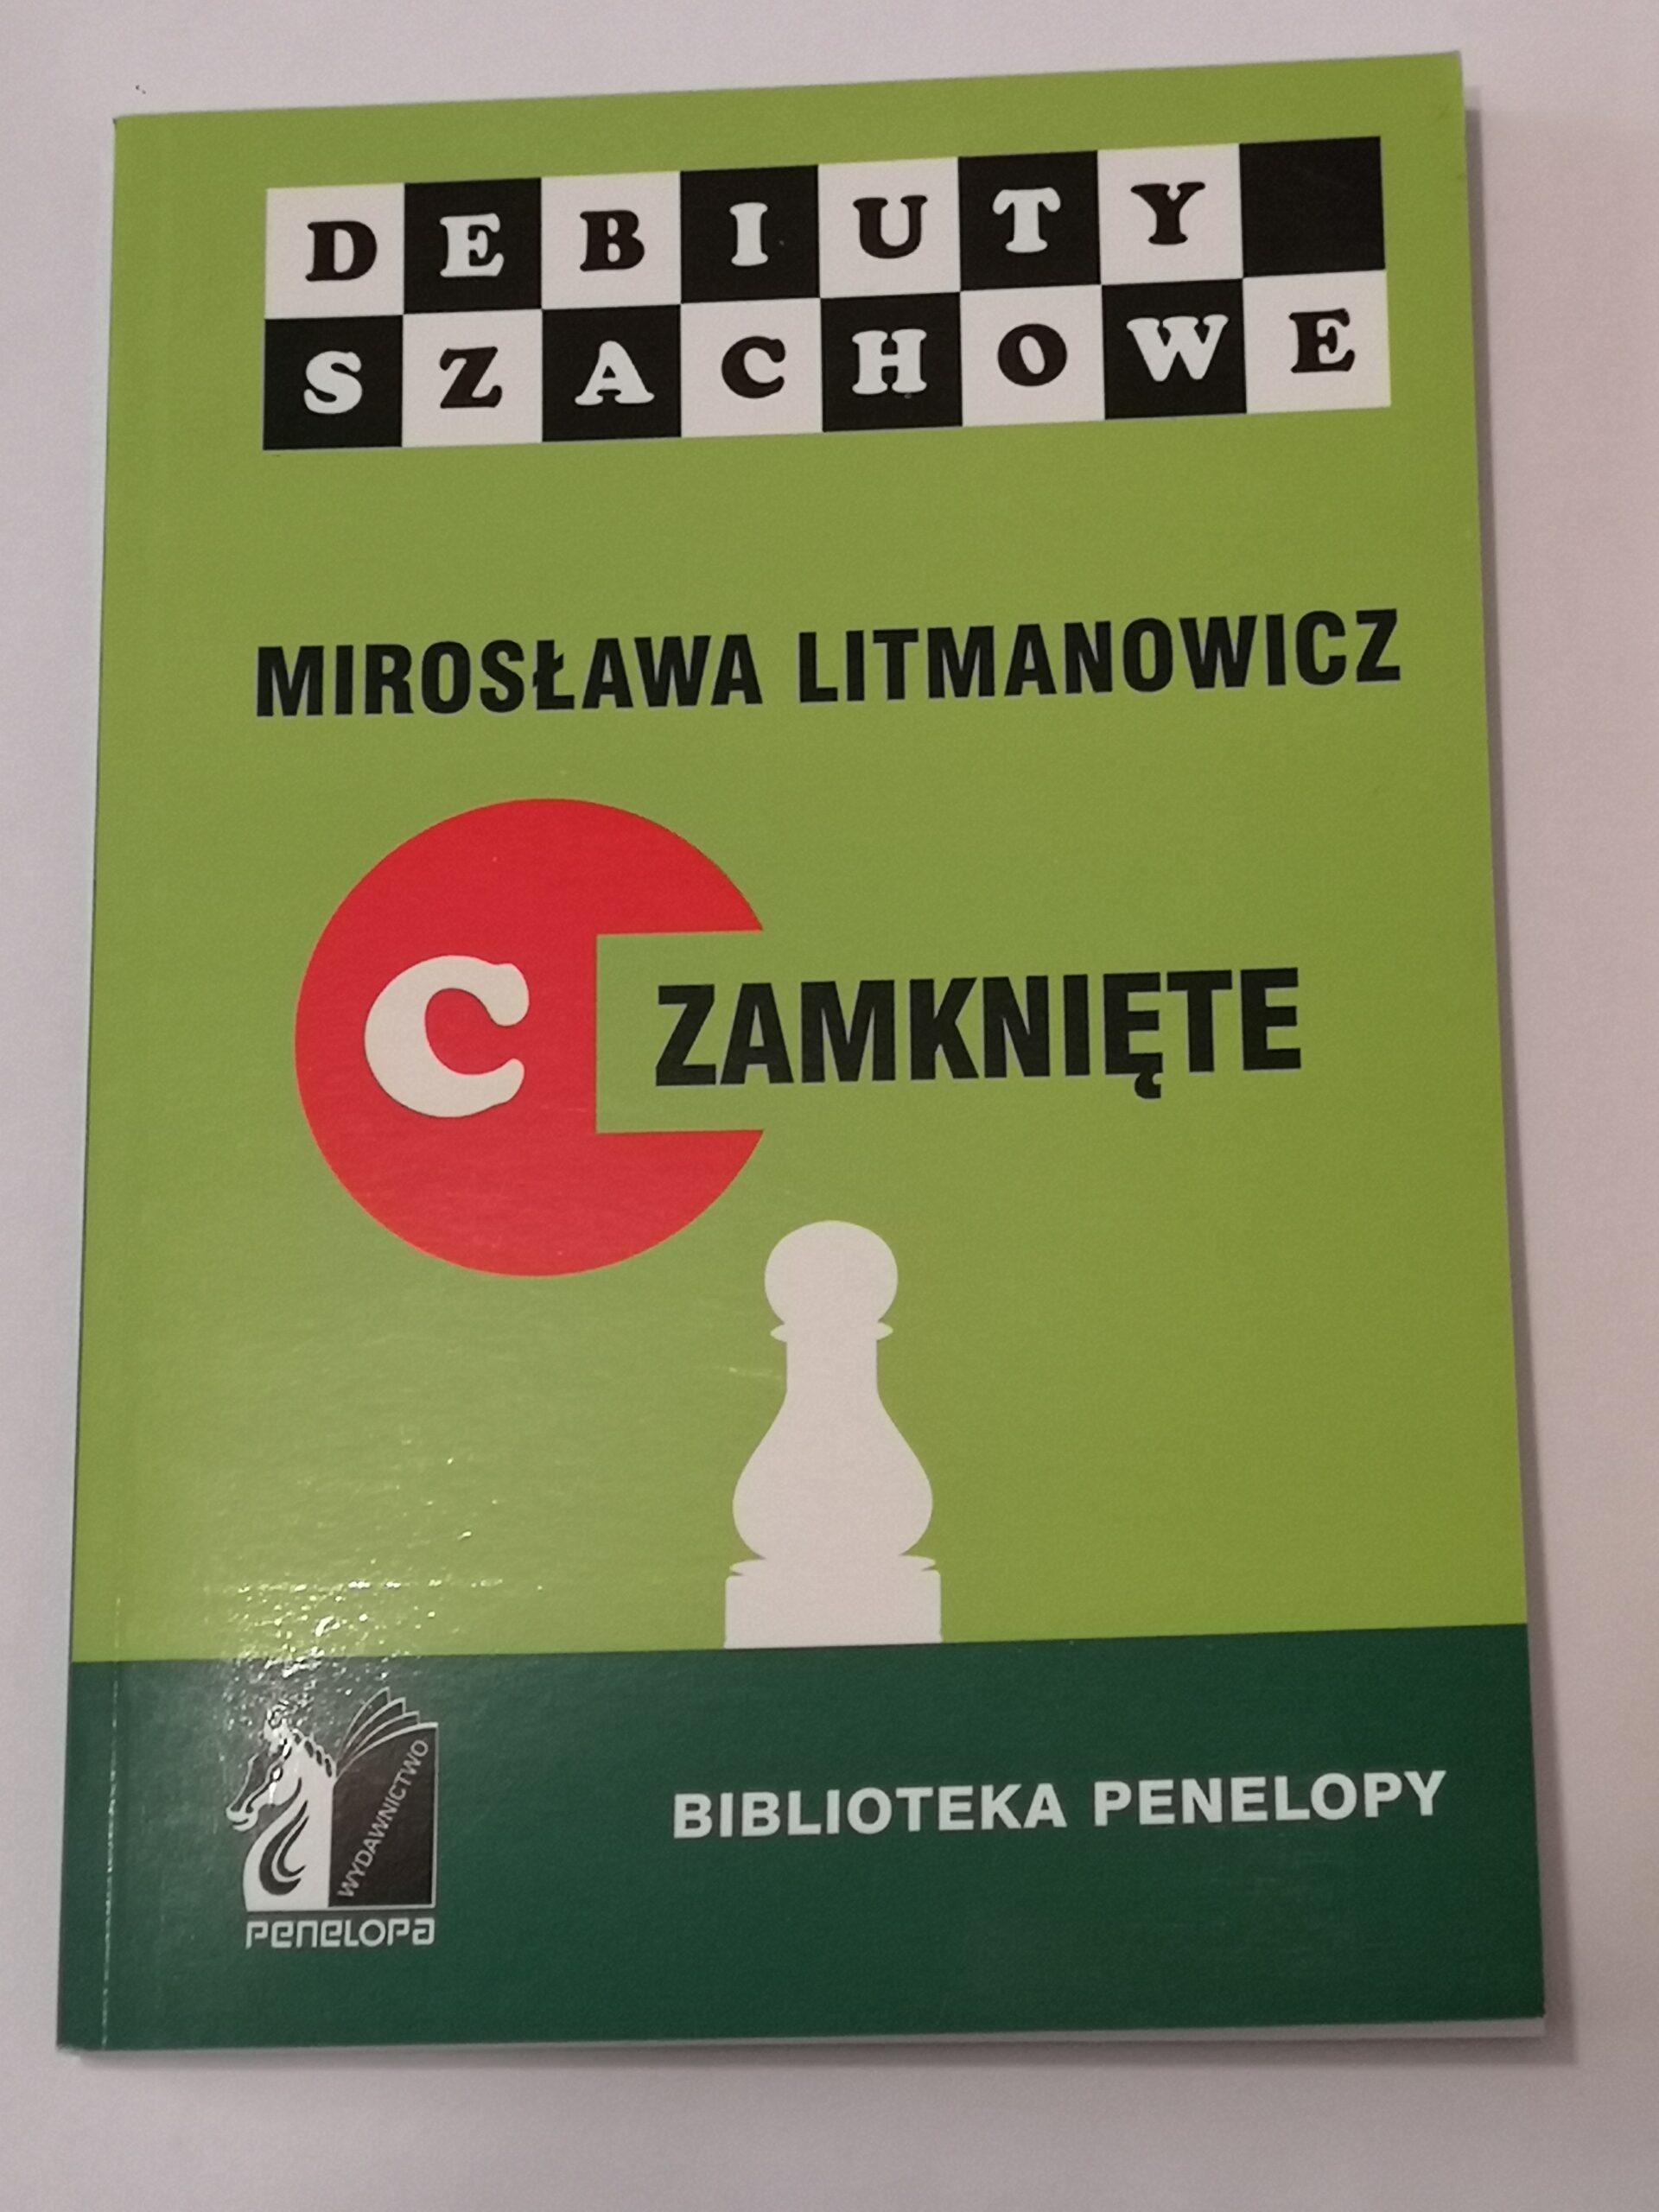 636# Debiuty szachowe zamknięte (M.Litmanowicz)